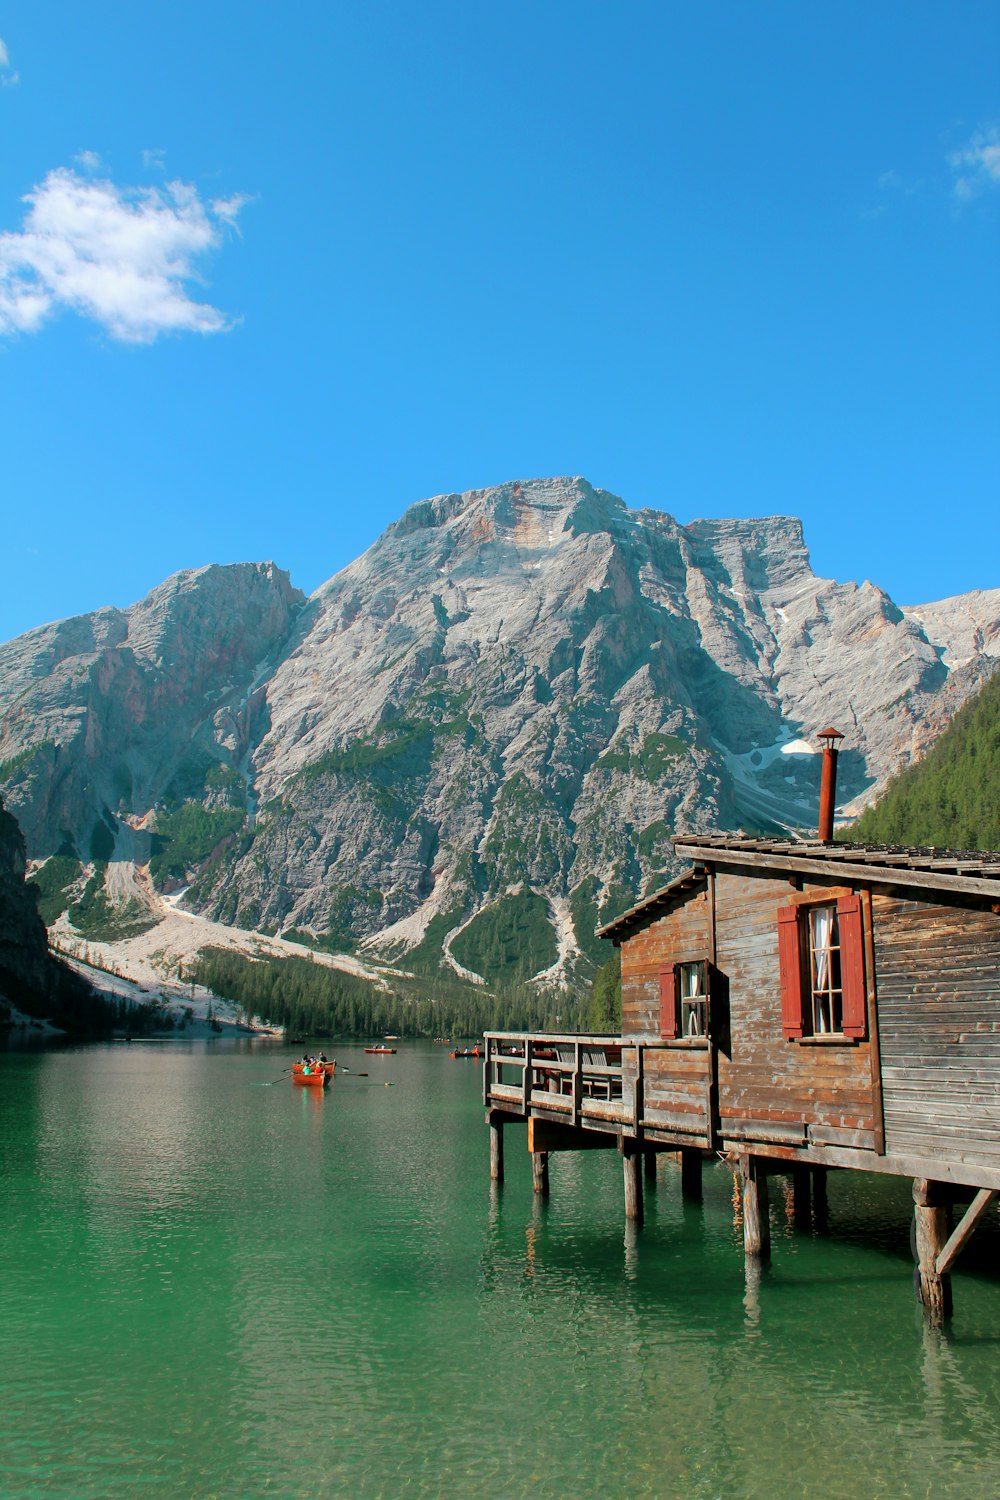 casa de madeira marrom na doca do lago perto da montanha sob o céu azul durante o dia